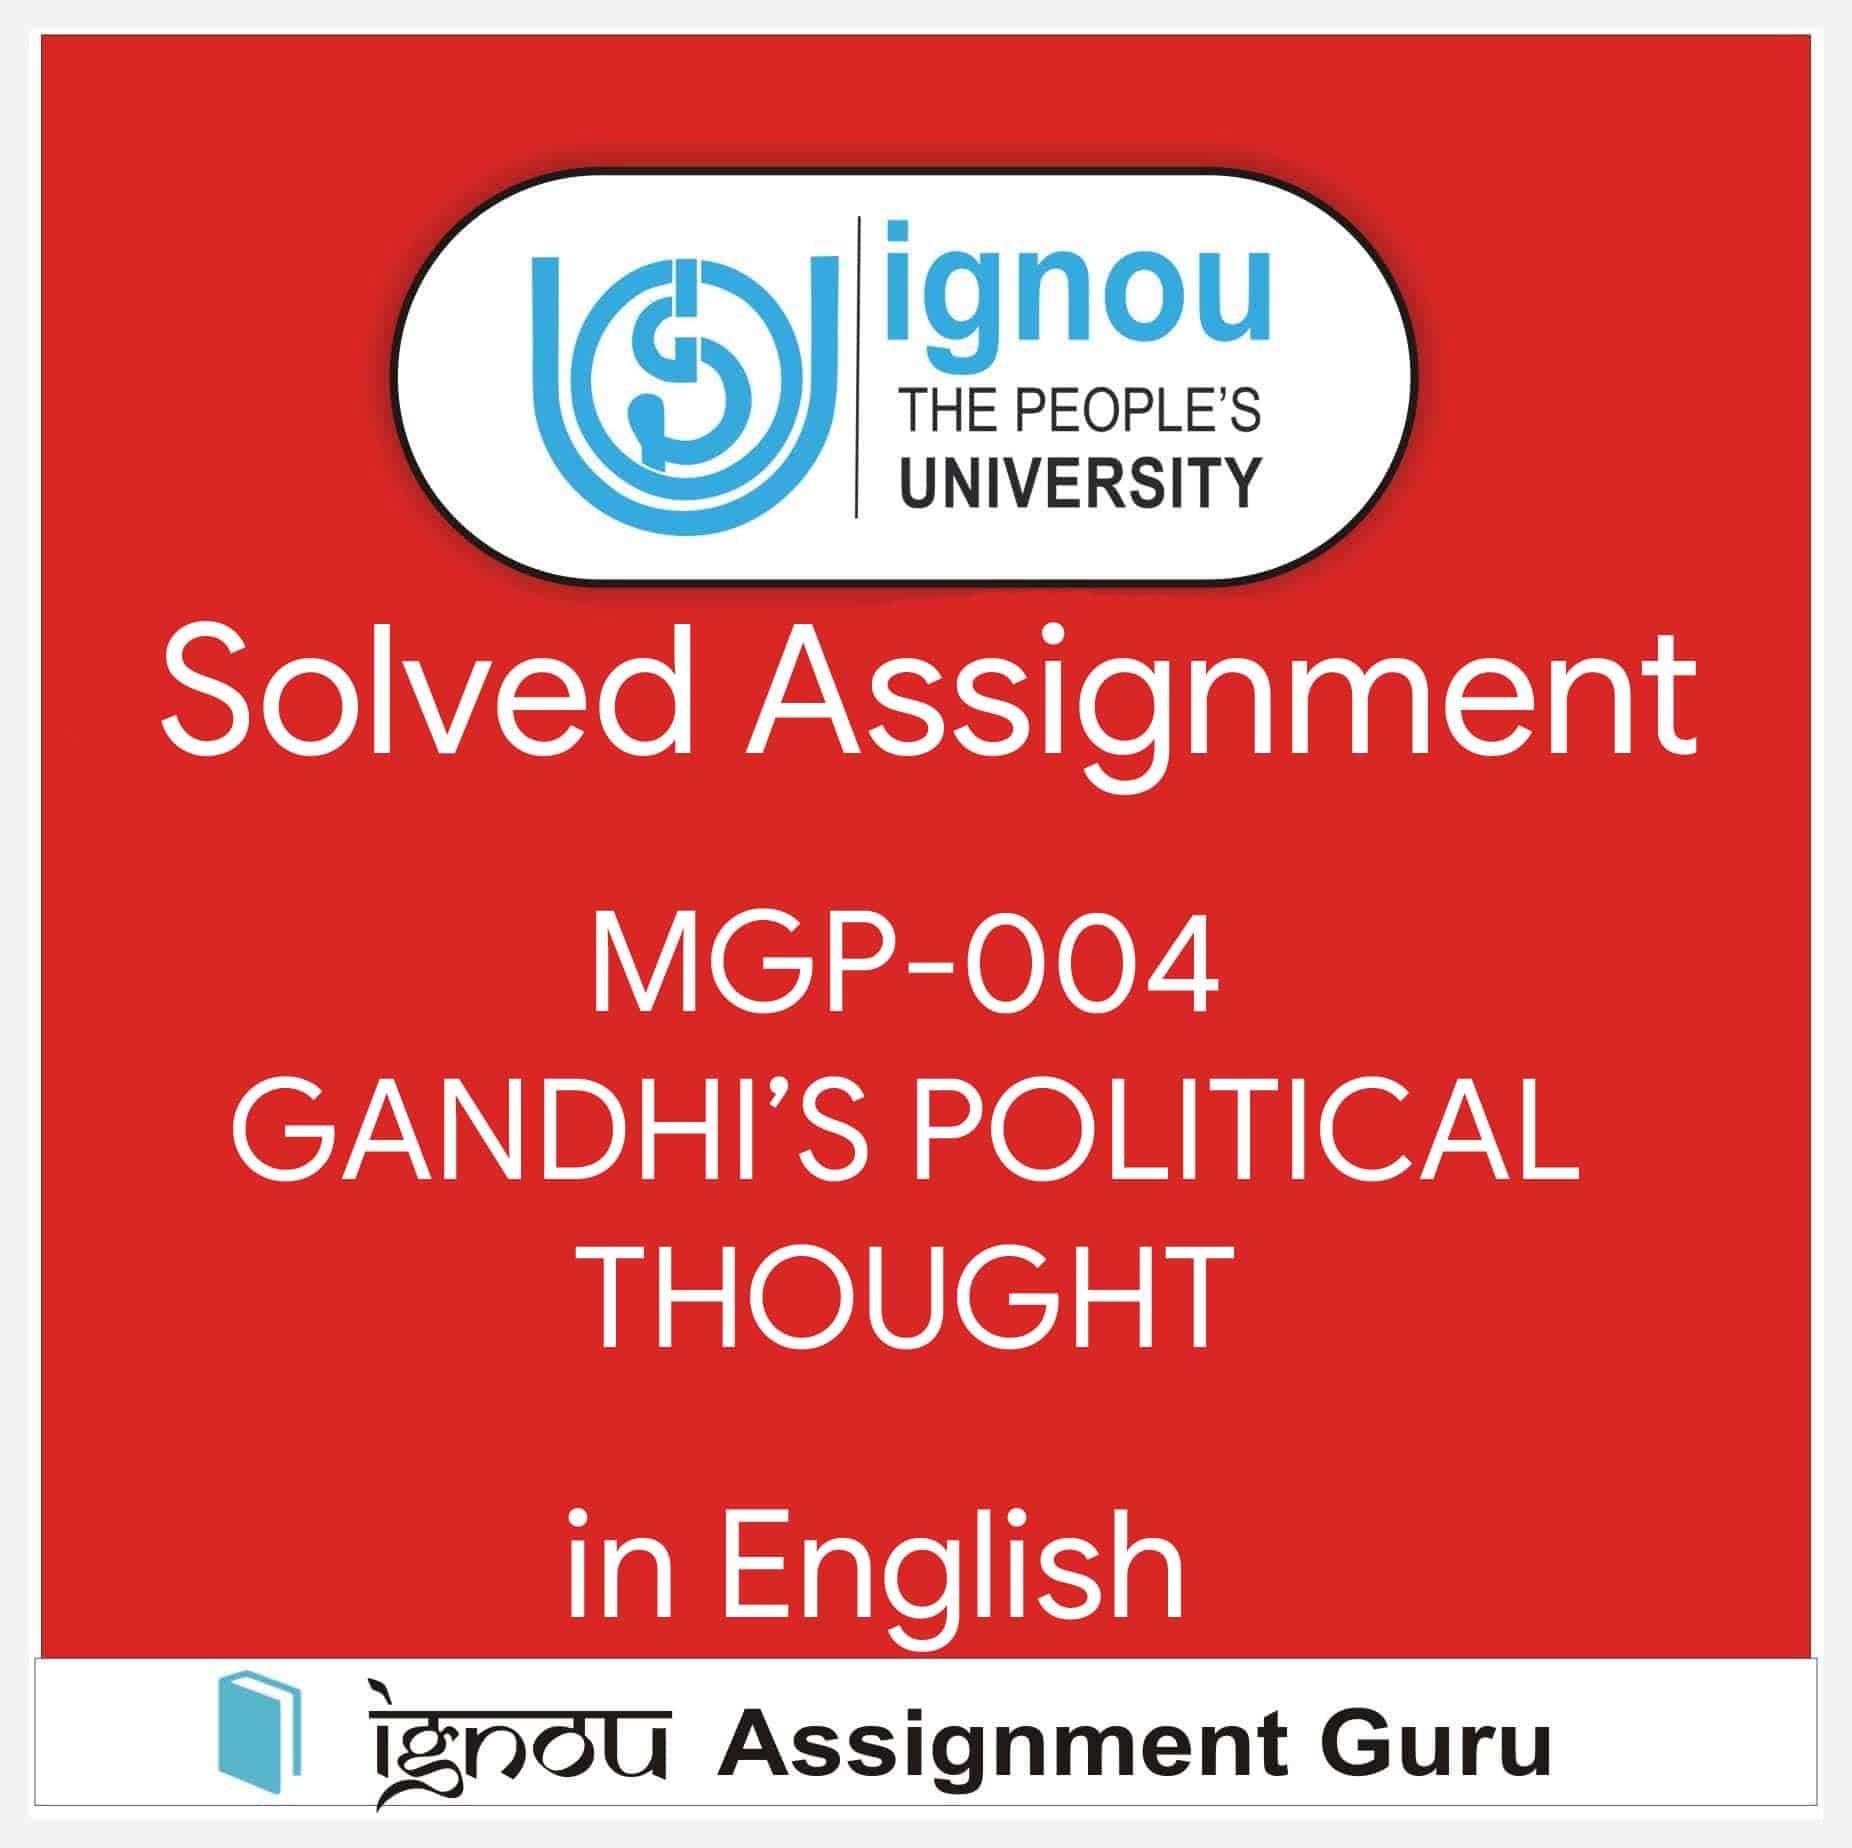 ignou assignment mgp 004